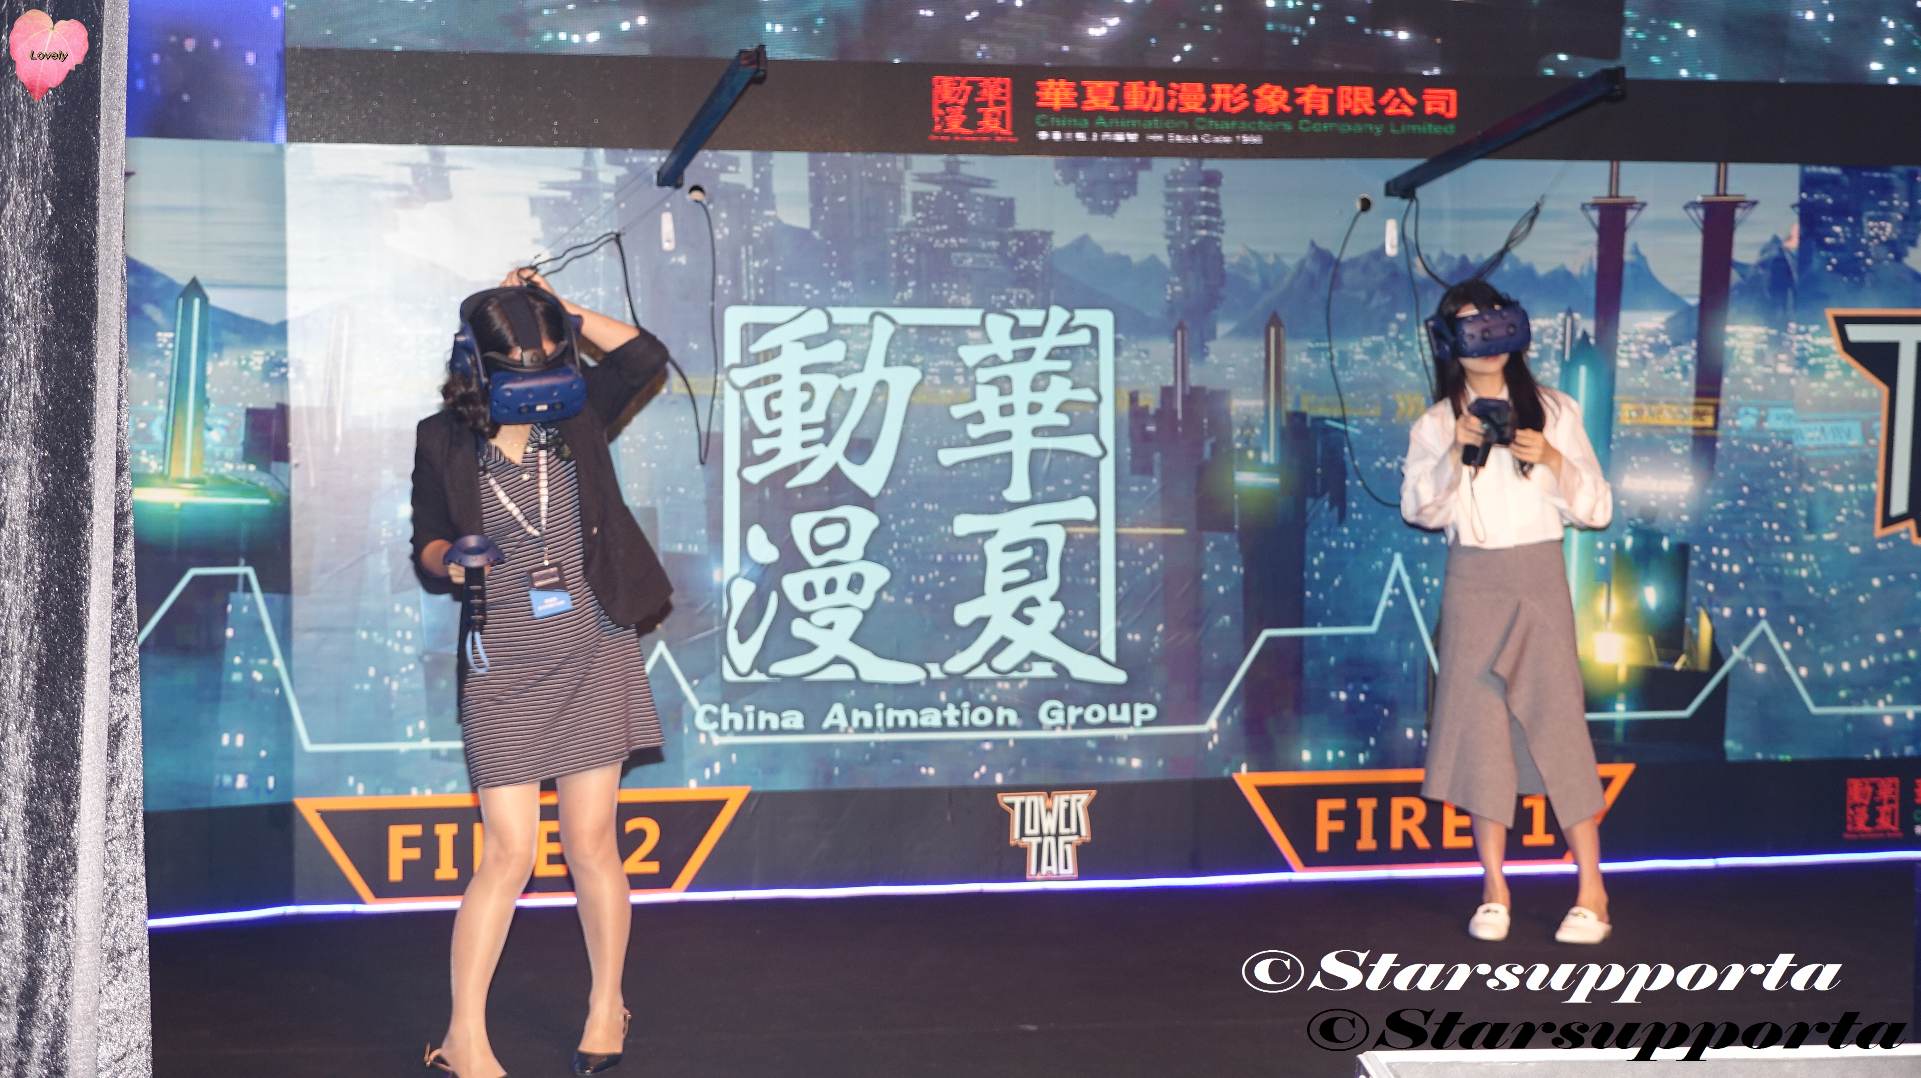 20180824-26 工銀亞洲香港電競音樂節 - 華夏動漫 VR電競體驗 @ 香港會議展覽中心